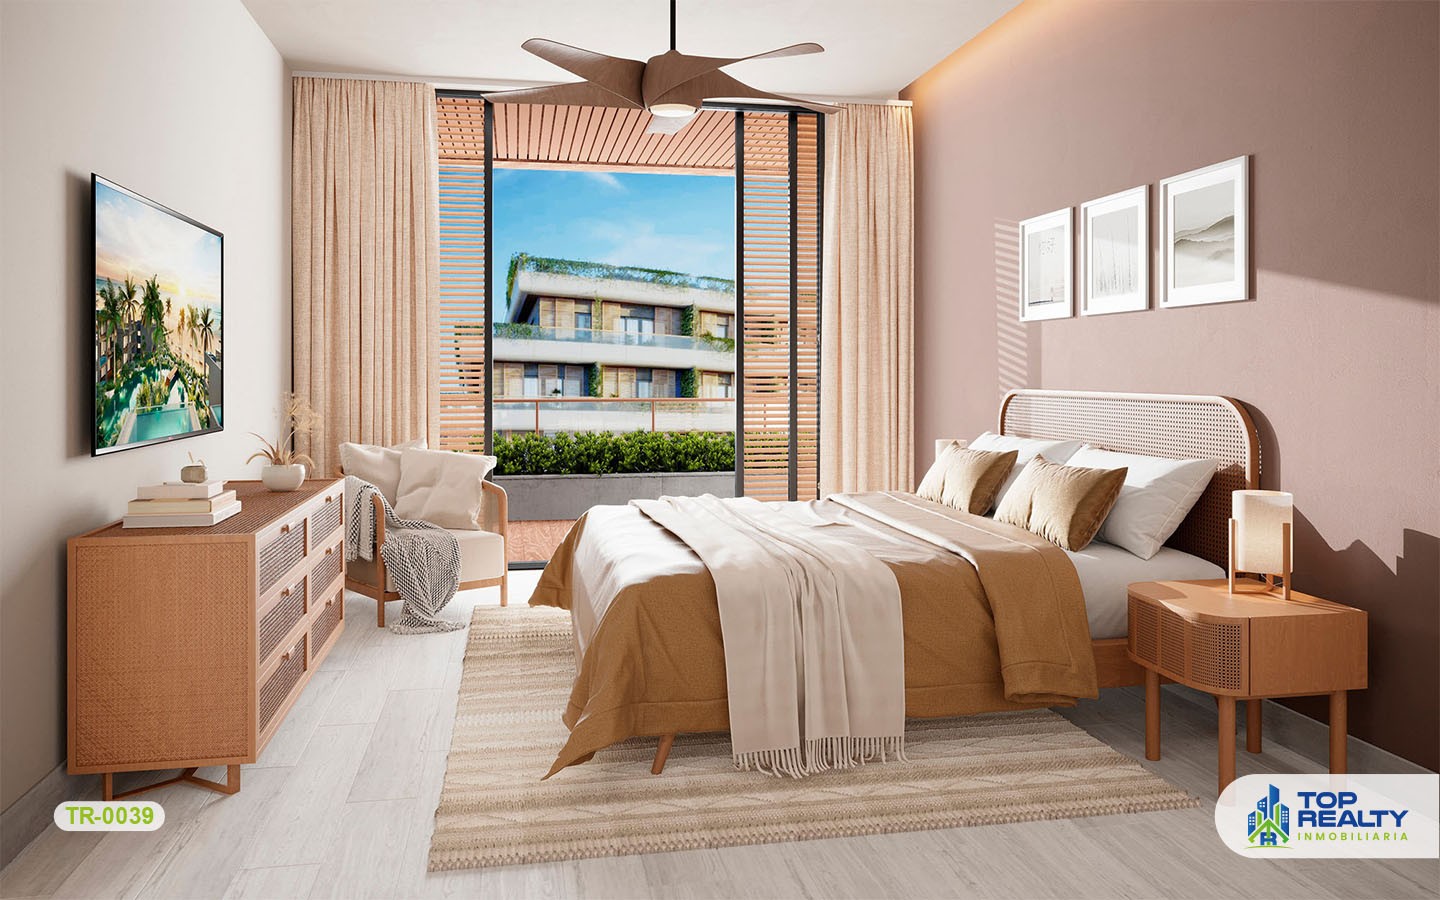 apartamentos - TR-0039: Inversión ideal en Punta Cana: vive el ambiente cosmopolita del Caribe. 4